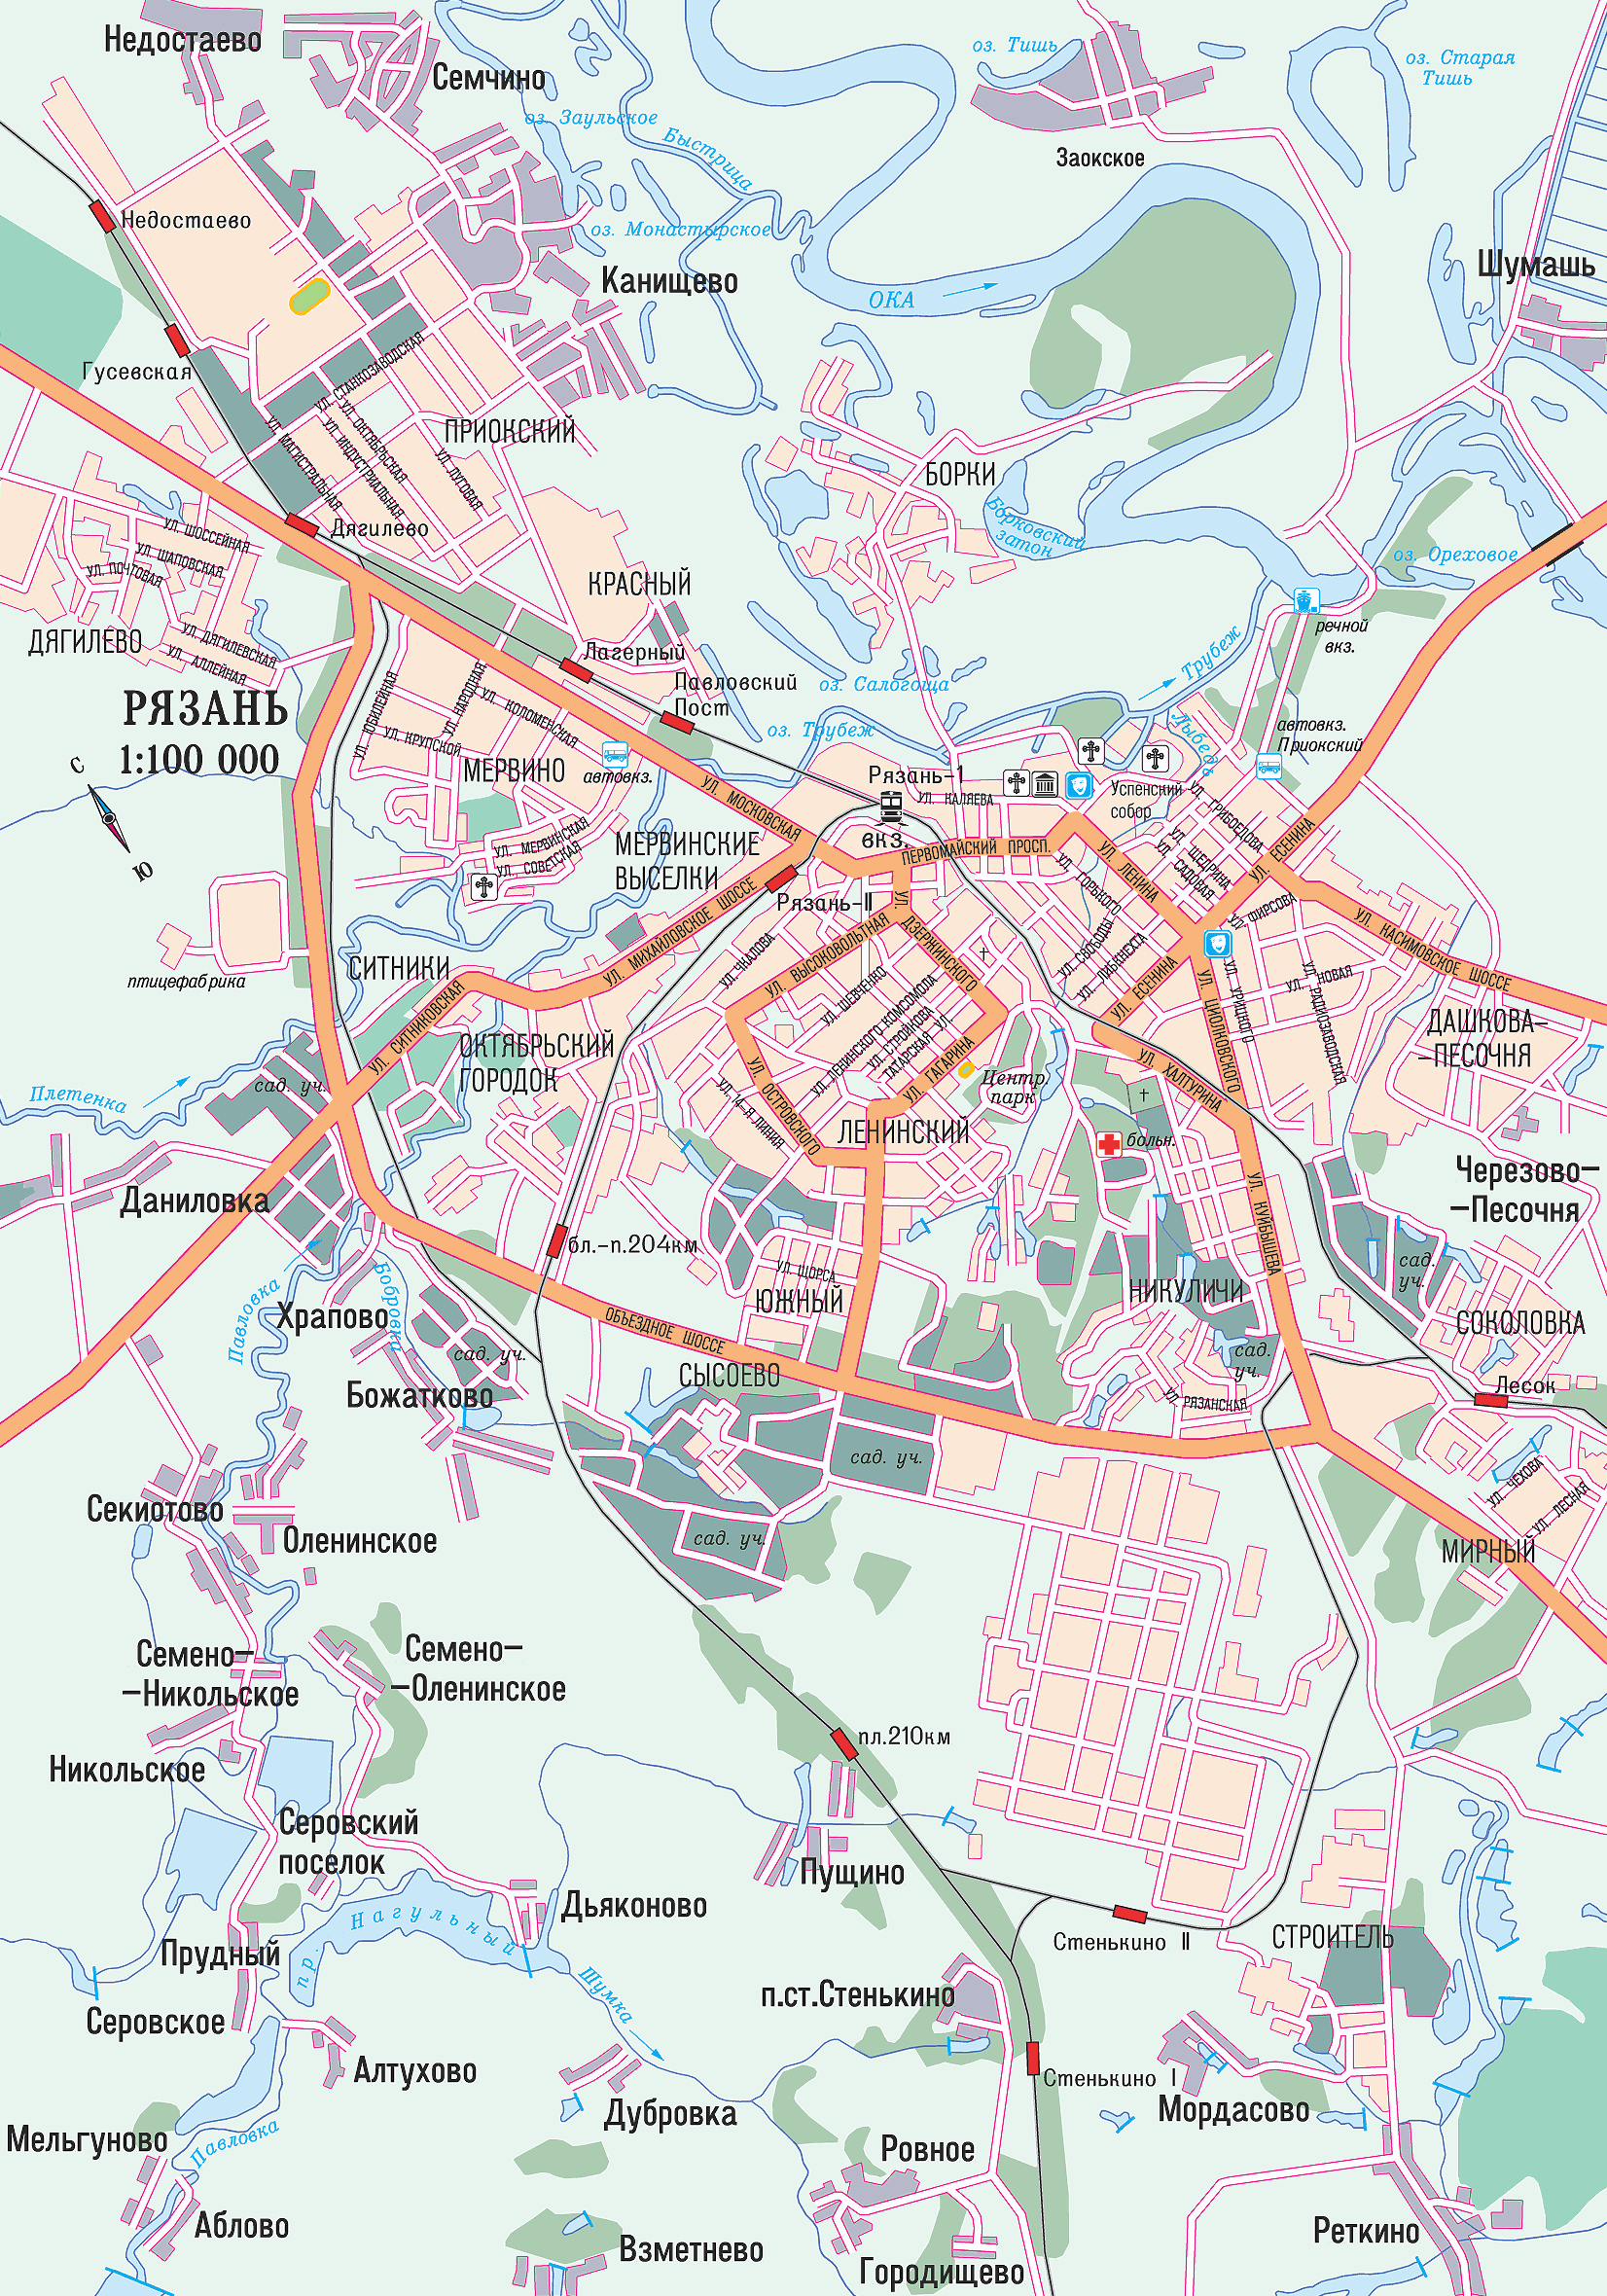 Ryazan center map